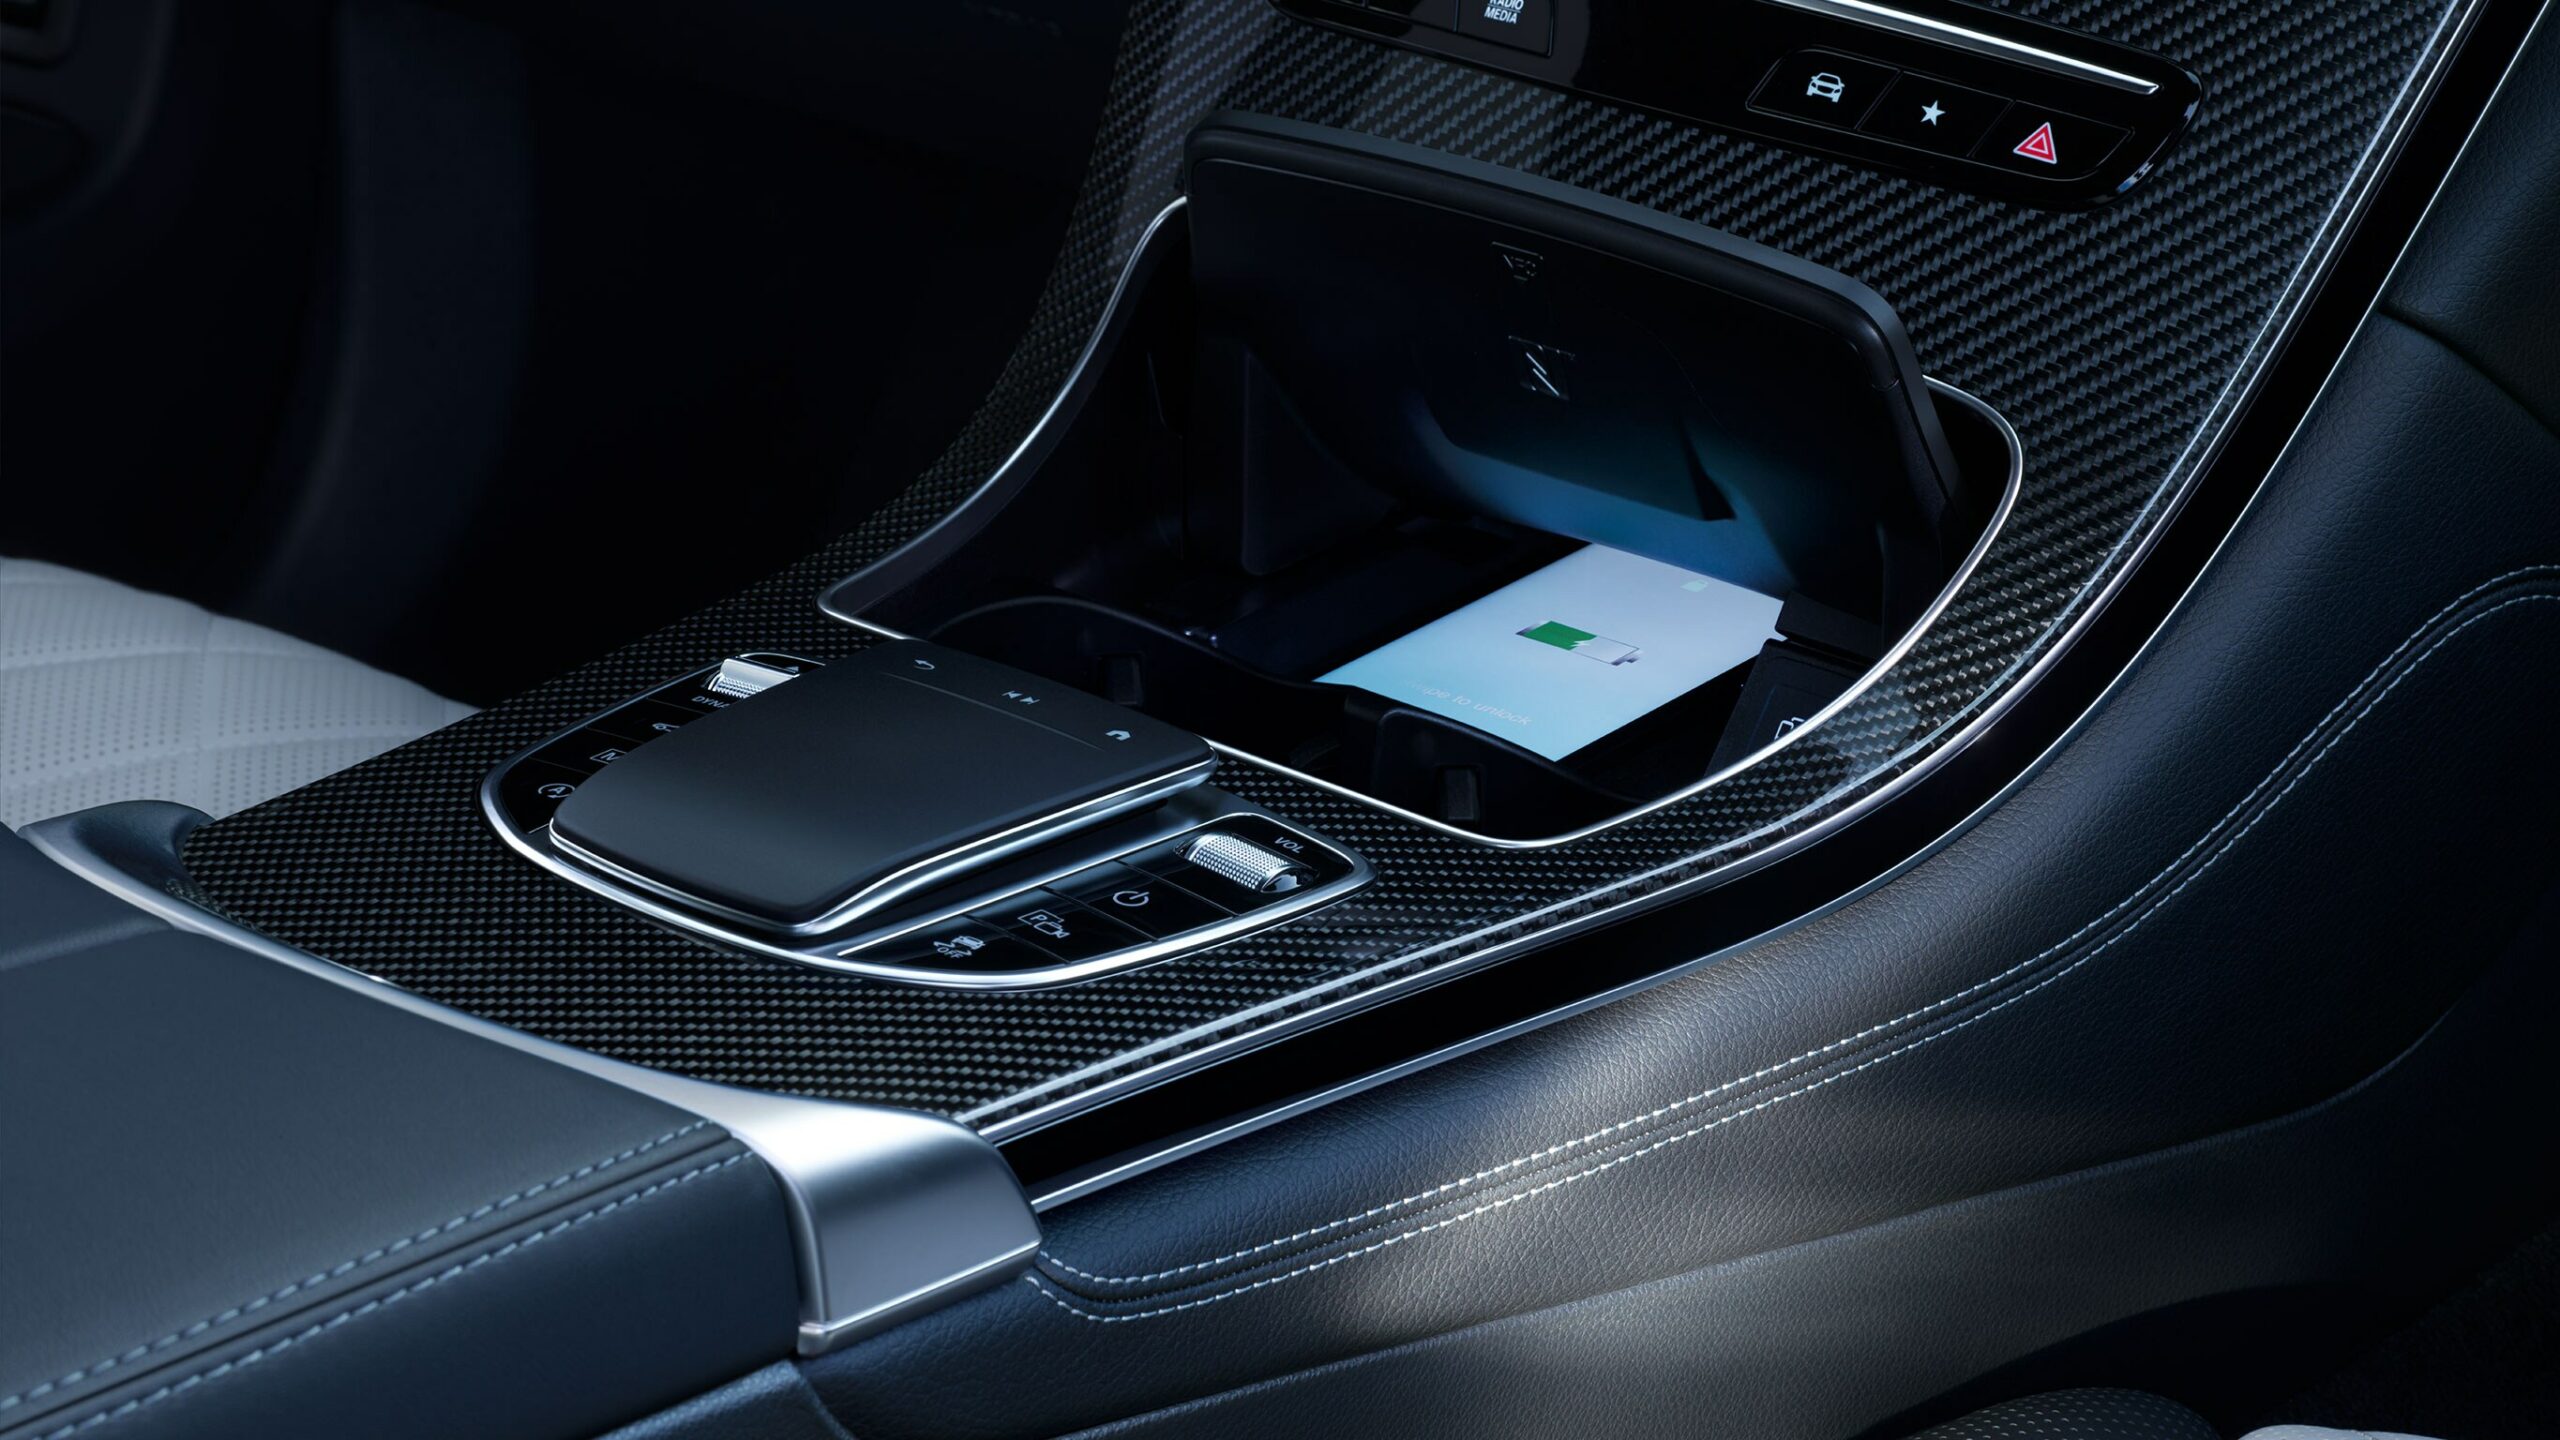 Caga inalambrica de smartphones con la GLC Coupe de Mercedes-Benz